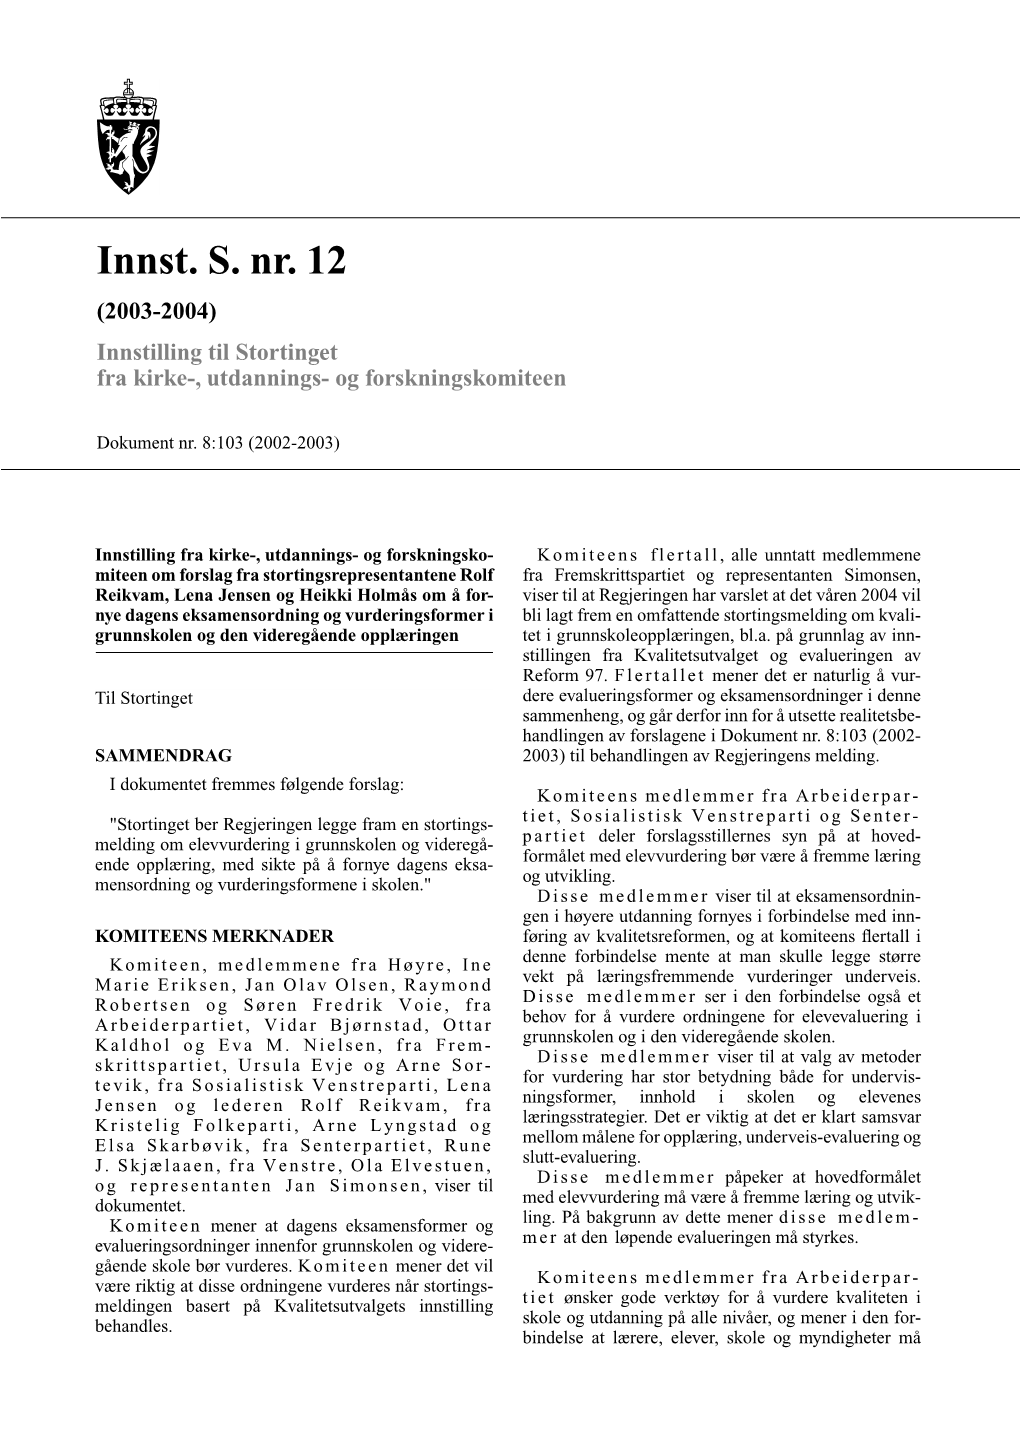 Innst. S. Nr. 12 (2003-2004) Innstilling Til Stortinget Fra Kirke-, Utdannings- Og Forskningskomiteen